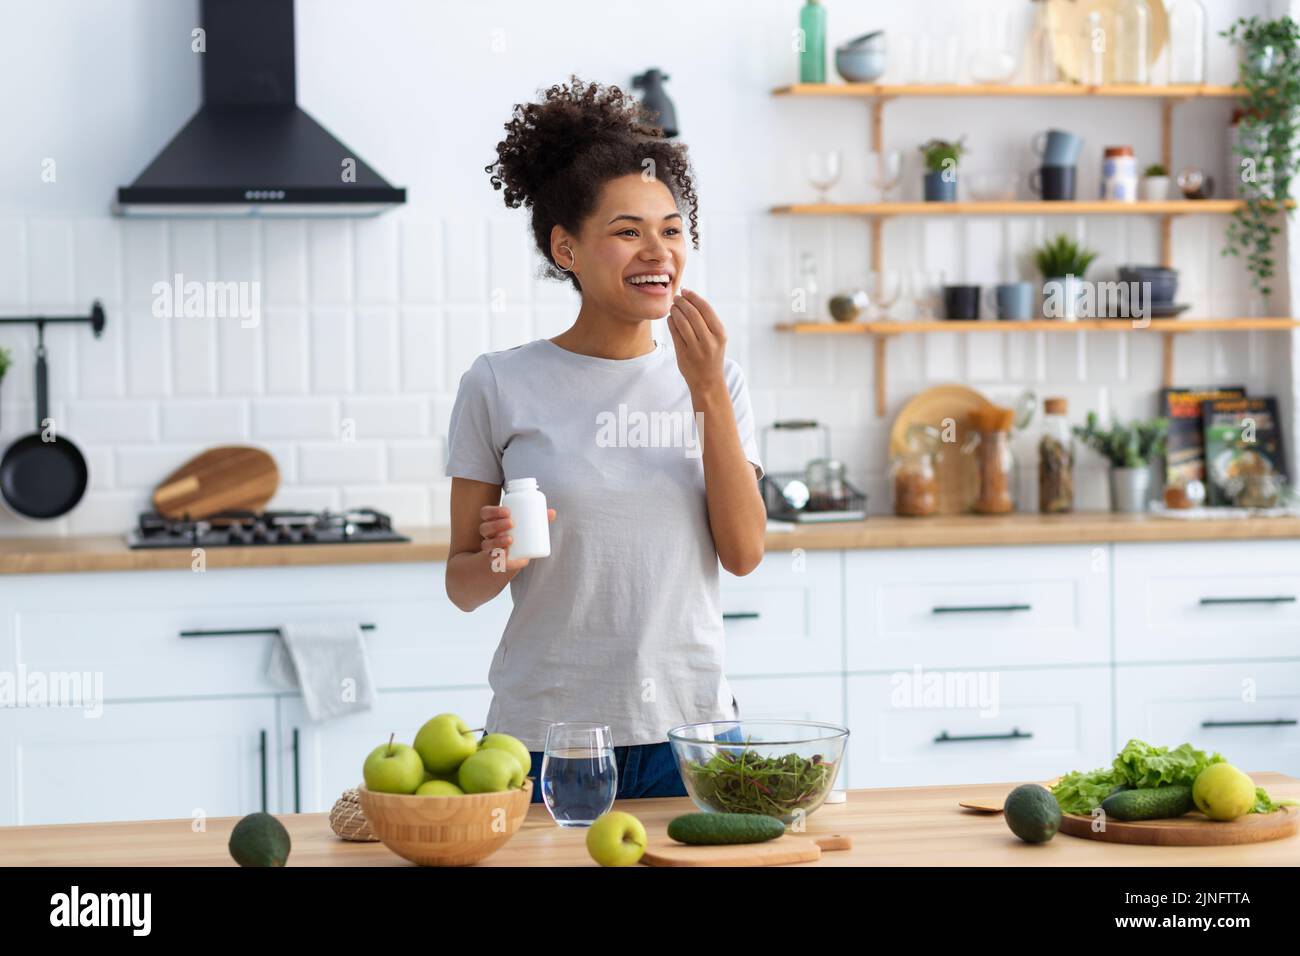 Glückliche afroamerikanische Frau, die am Küchentisch in der heimischen Küche steht und Nahrungsergänzungsmittel trinkt Stockfoto